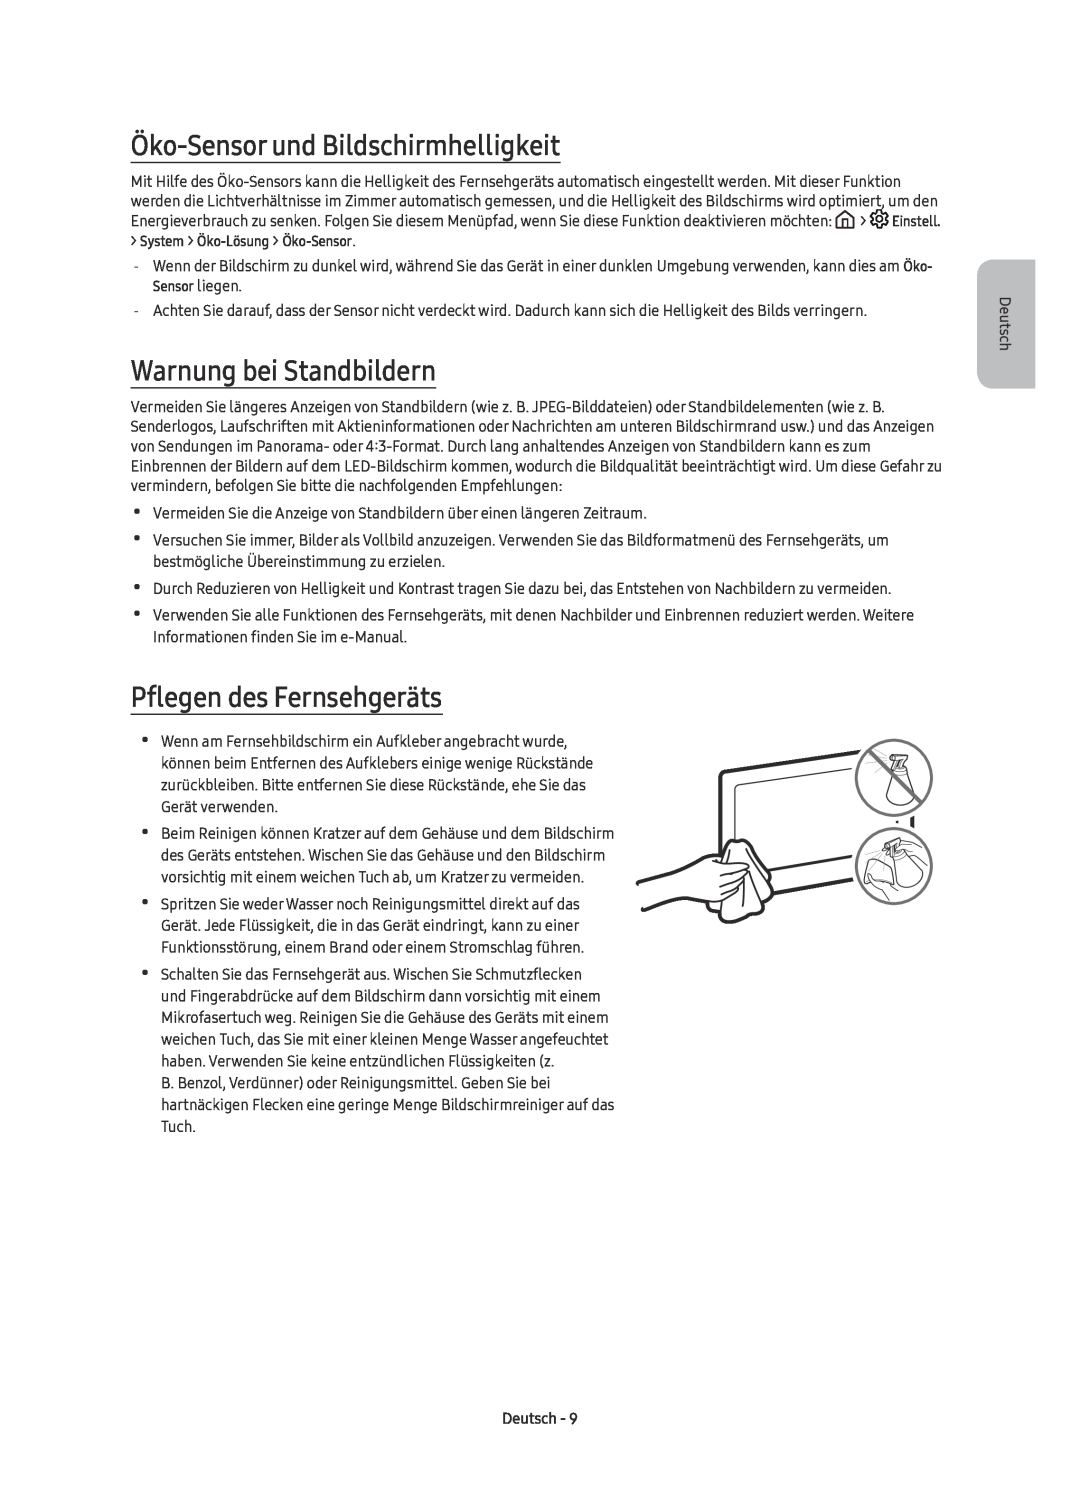 Samsung UE55KU6079UXZG Öko-Sensor und Bildschirmhelligkeit, Warnung bei Standbildern, Pflegen des Fernsehgeräts, Deutsch 